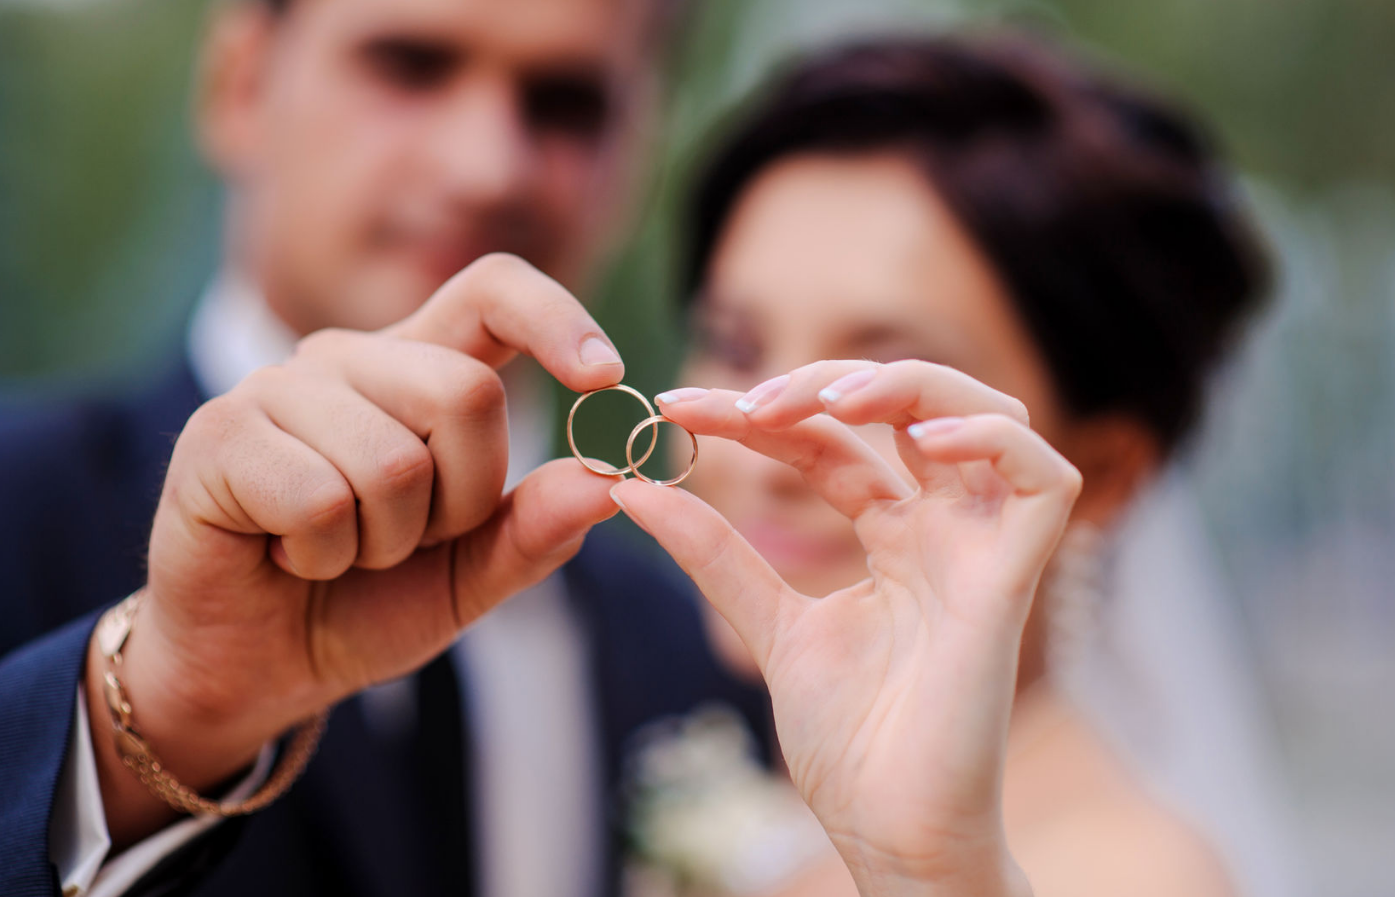 Супружество рк. Свадебные кольца. Кольца жениха и невесты. Брак. Жених с кольцом.